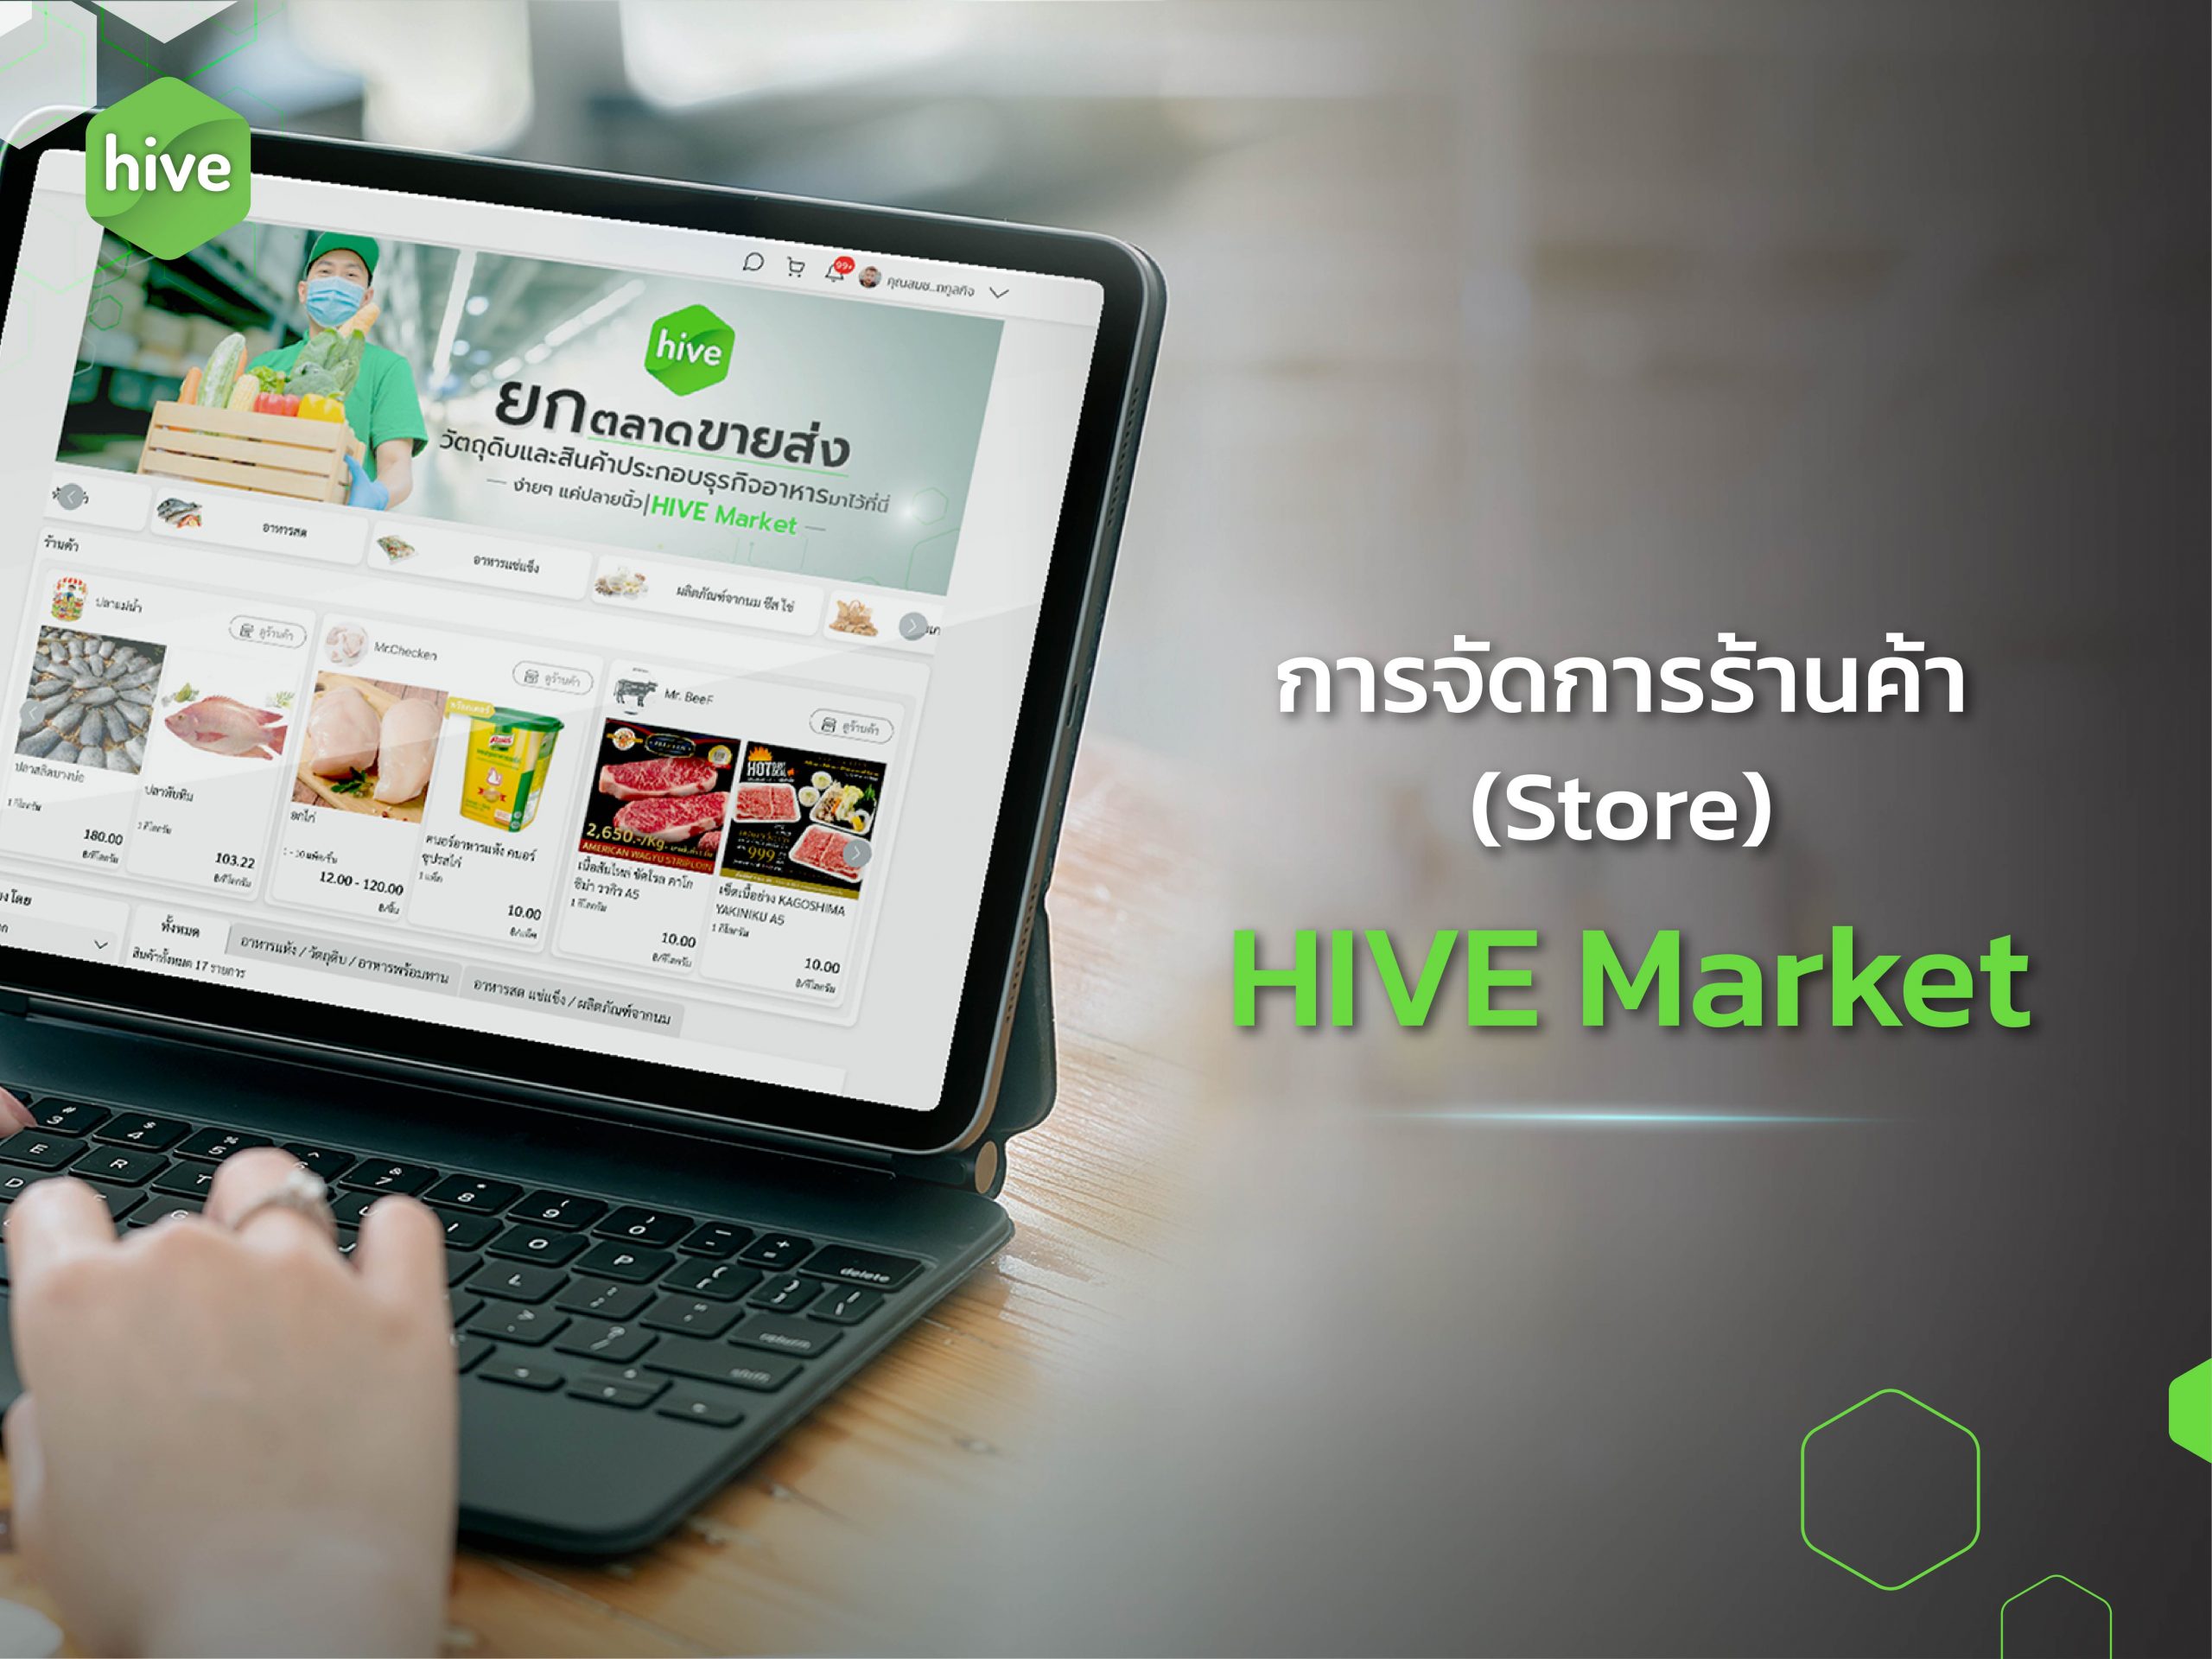 คู่มือ จัดการร้านค้าบน Hive Market - Hive Marker